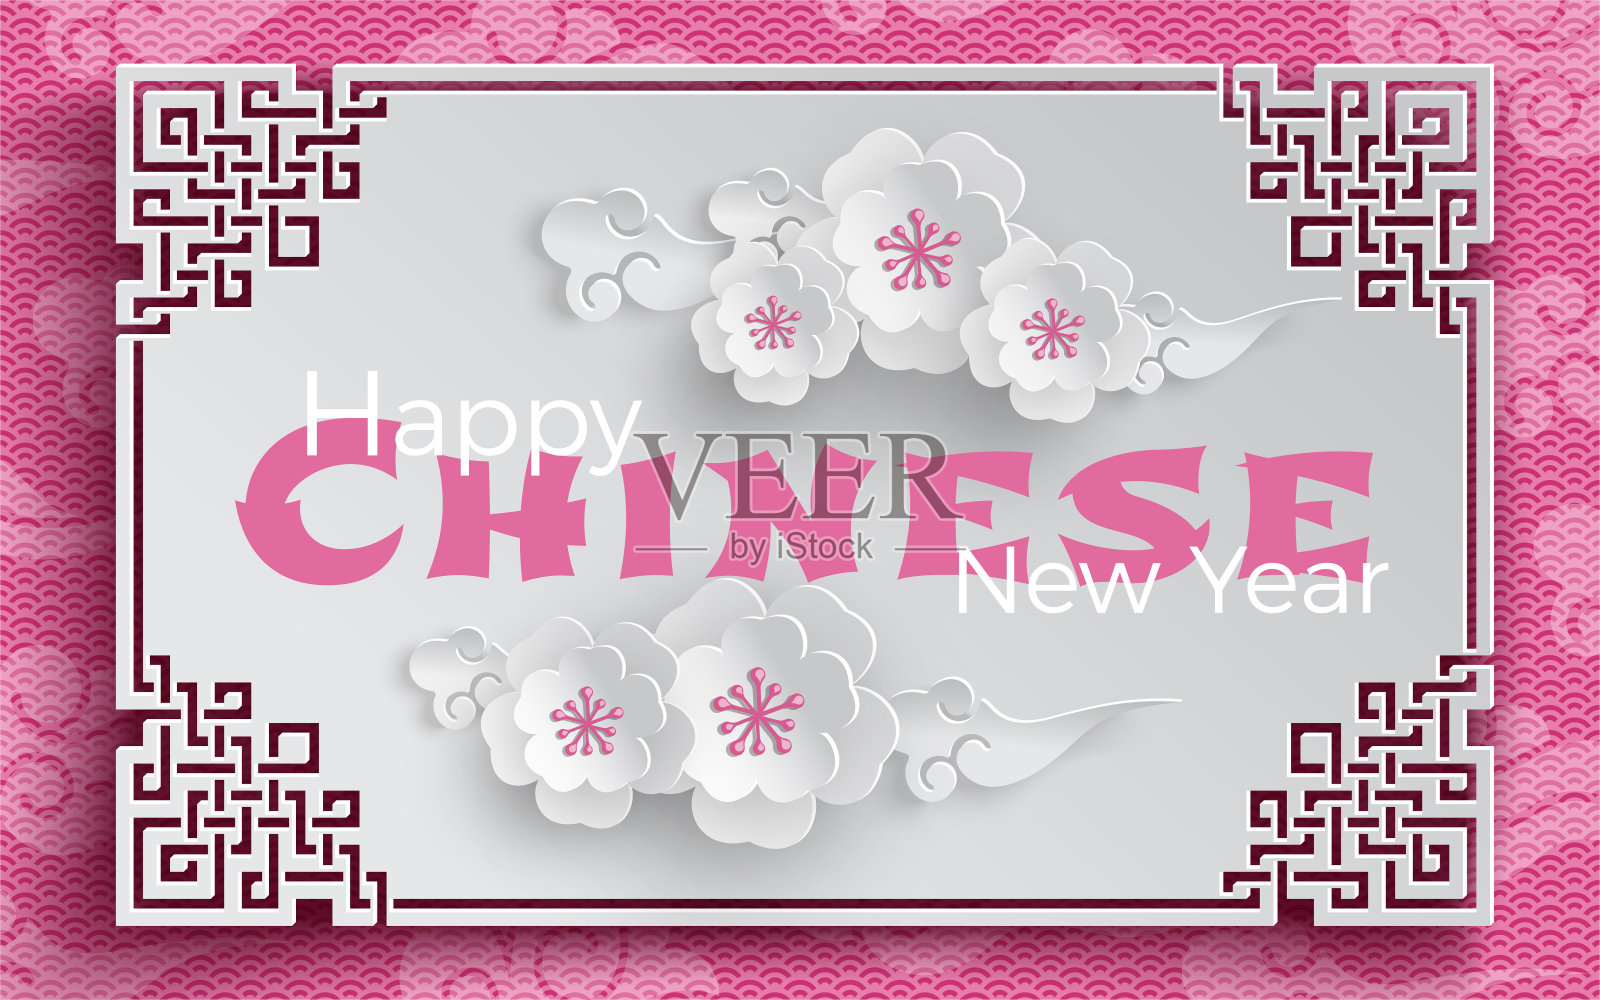 东方框架与樱花和云彩在粉红色的图案背景为中国新年贺卡，剪纸风格。矢量，说明中国新年设计模板素材